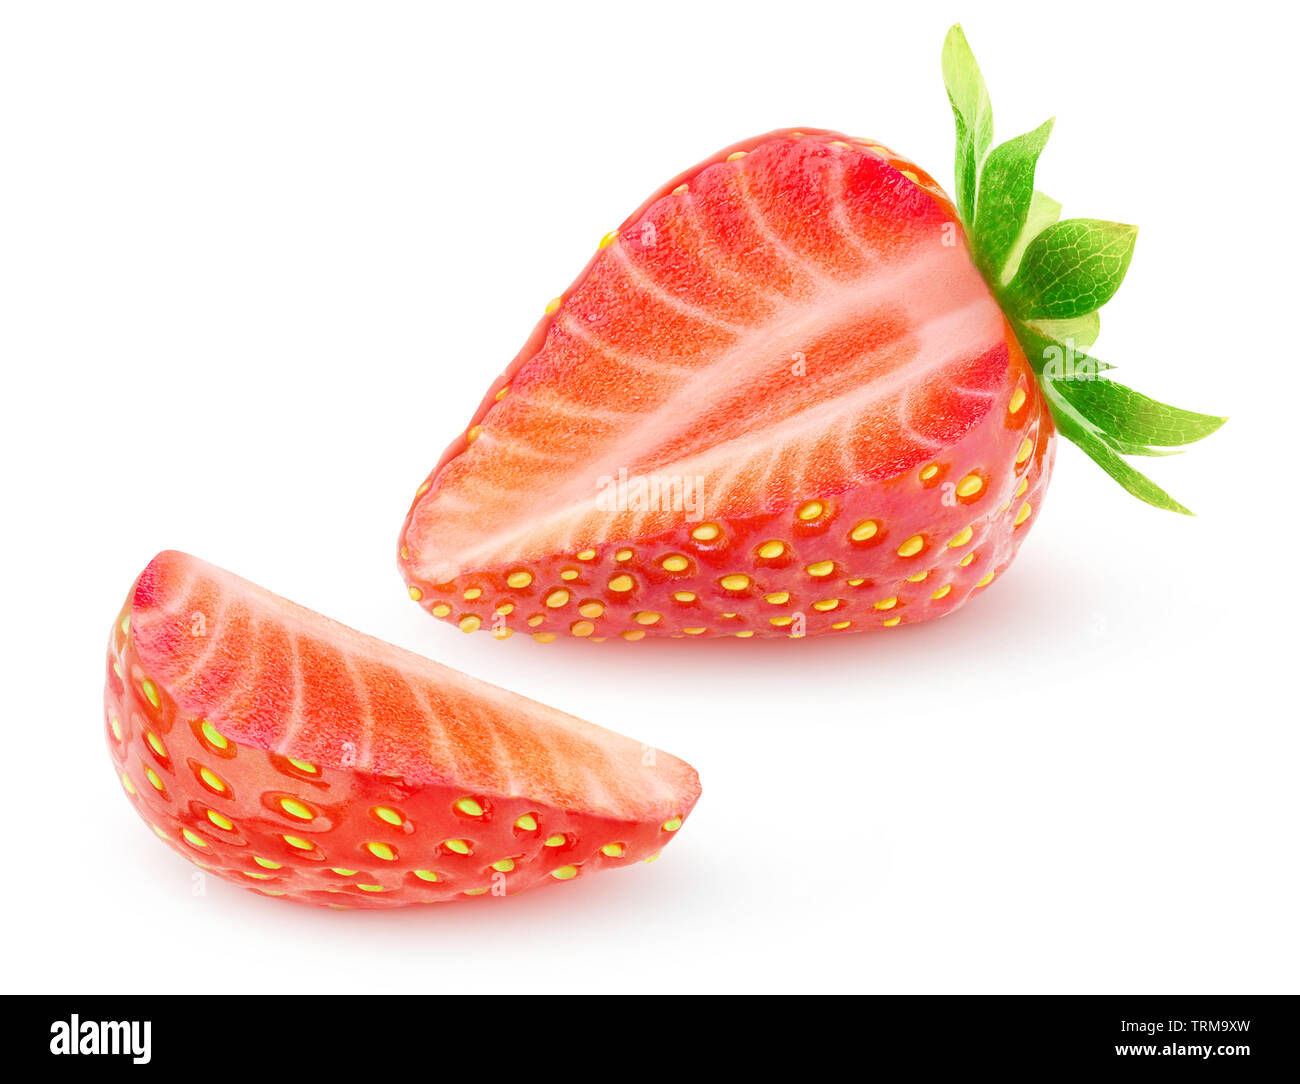 Isolierte Erdbeere. Eine Erdbeere Obst mit ausgeschnittenen Slice auf weißem Hintergrund mit Freistellungspfad isoliert Stockfoto